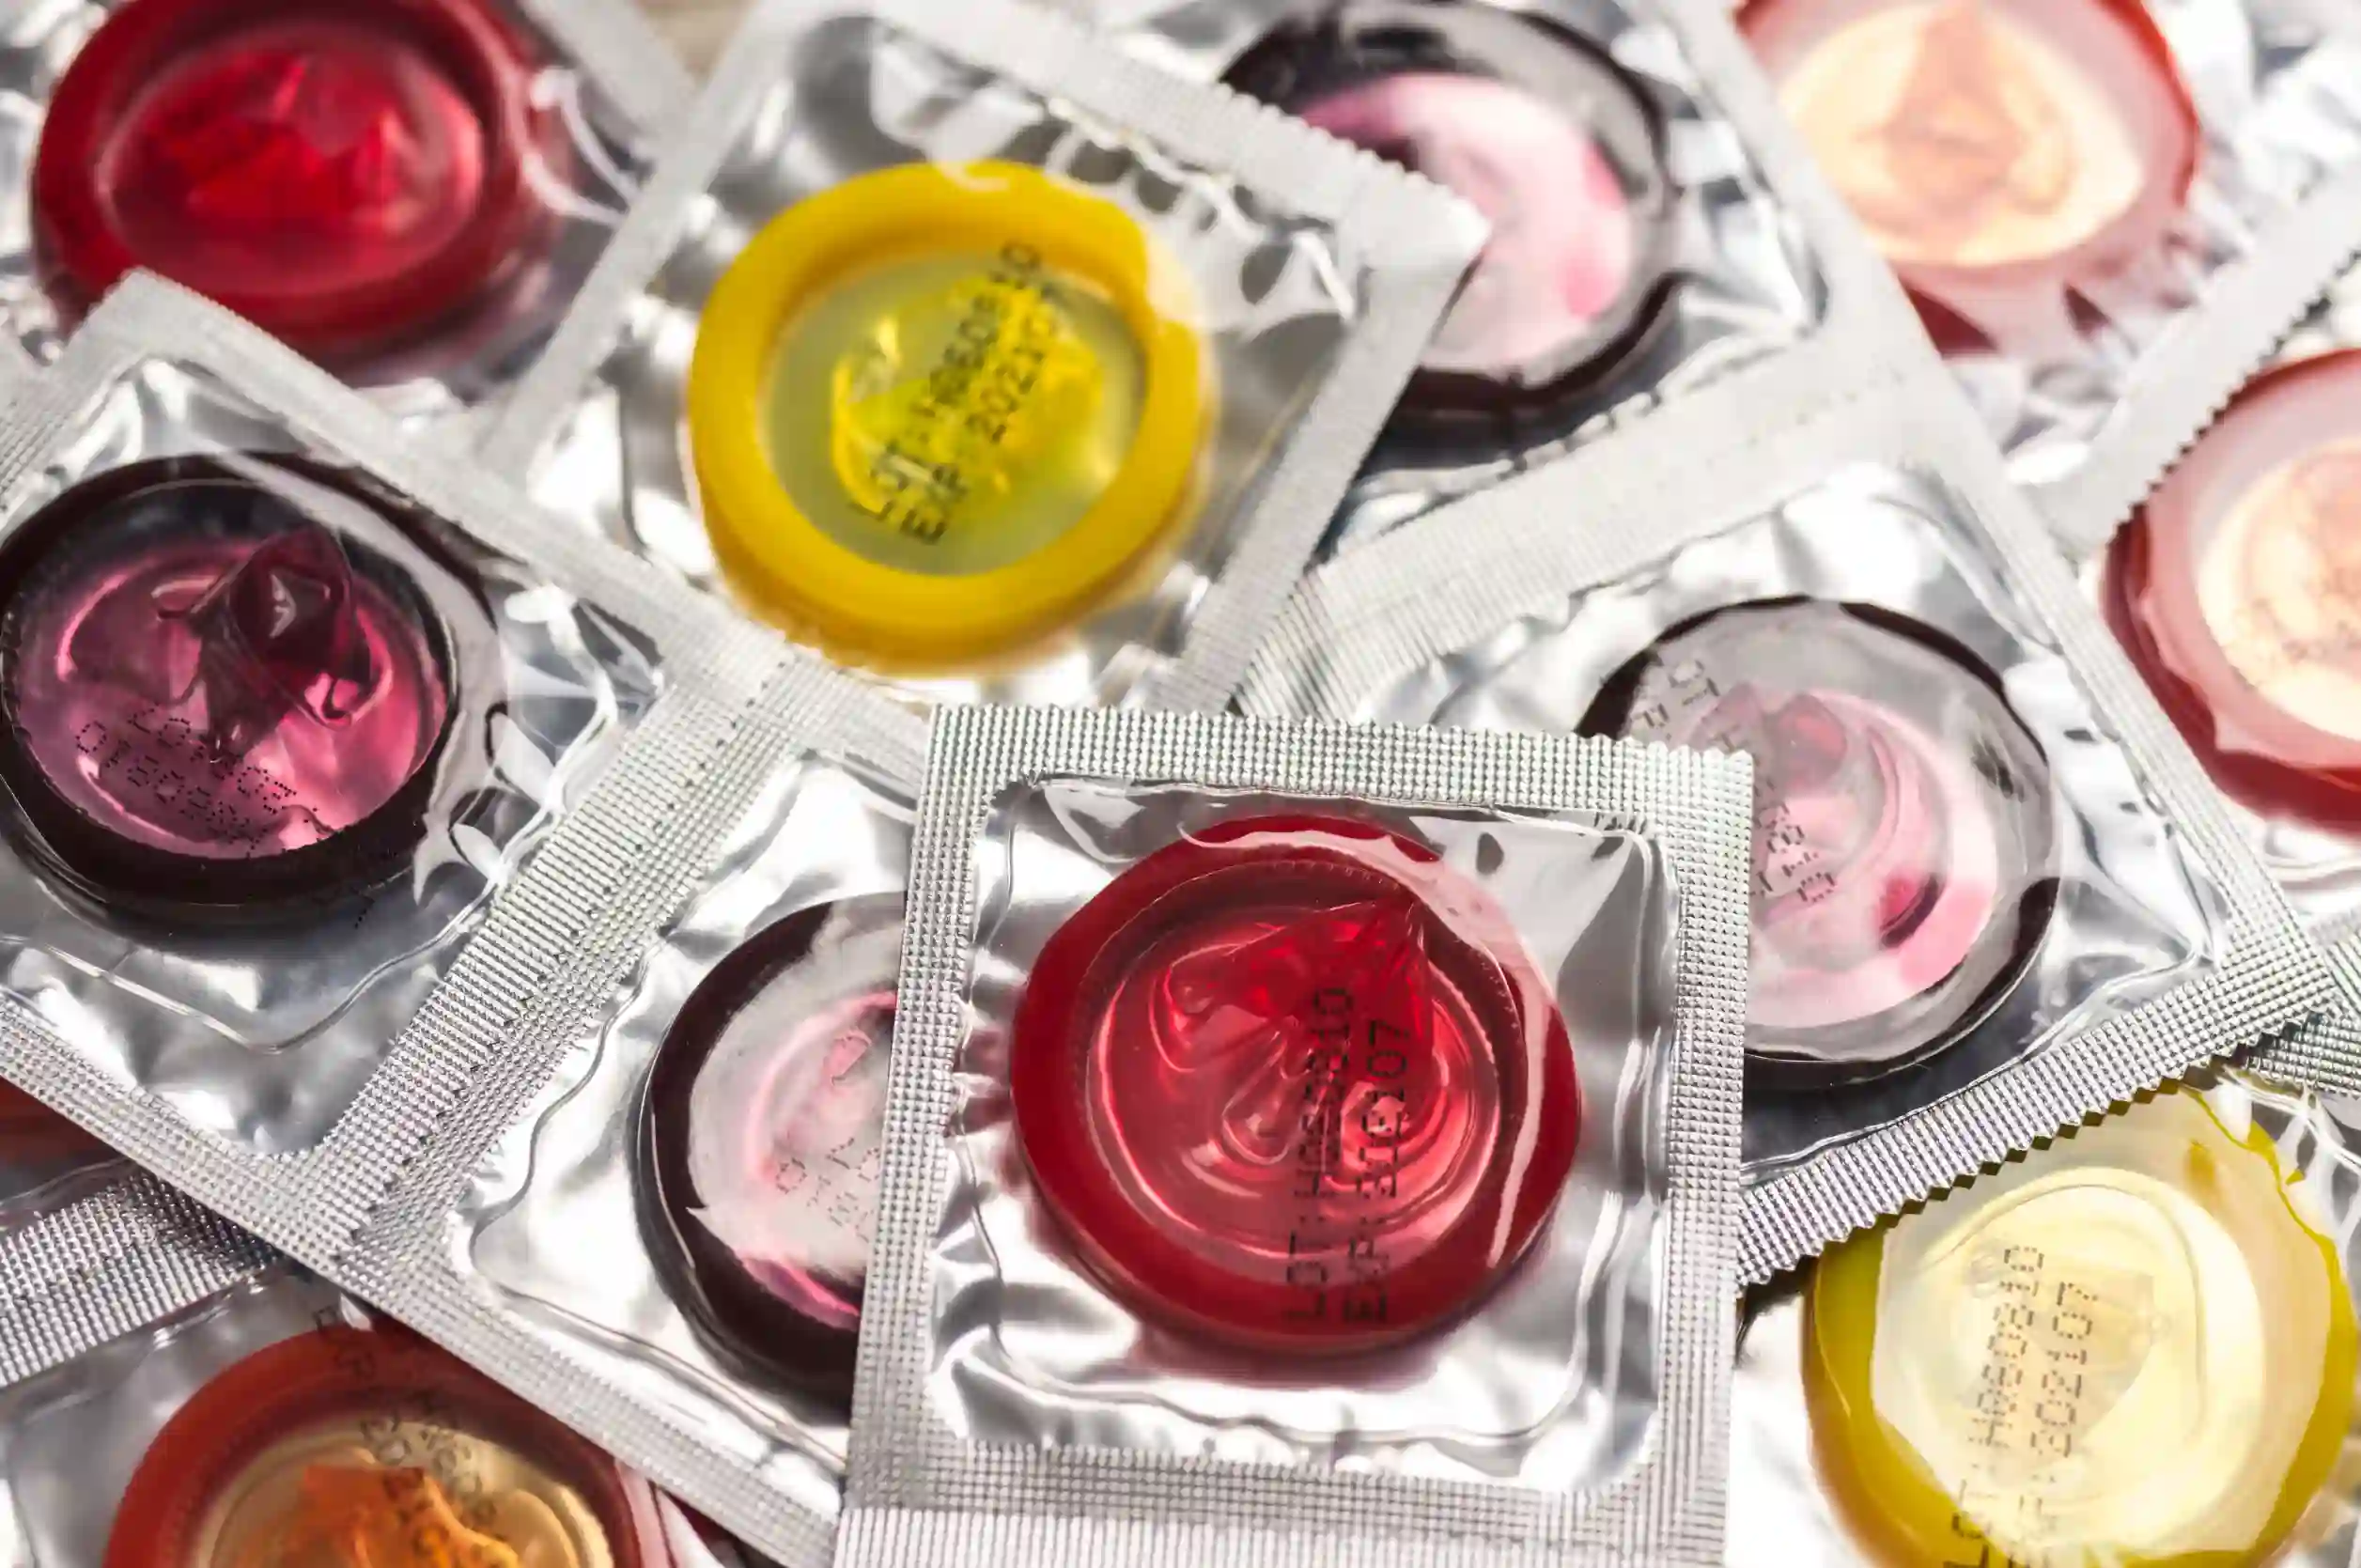 a pile of condoms